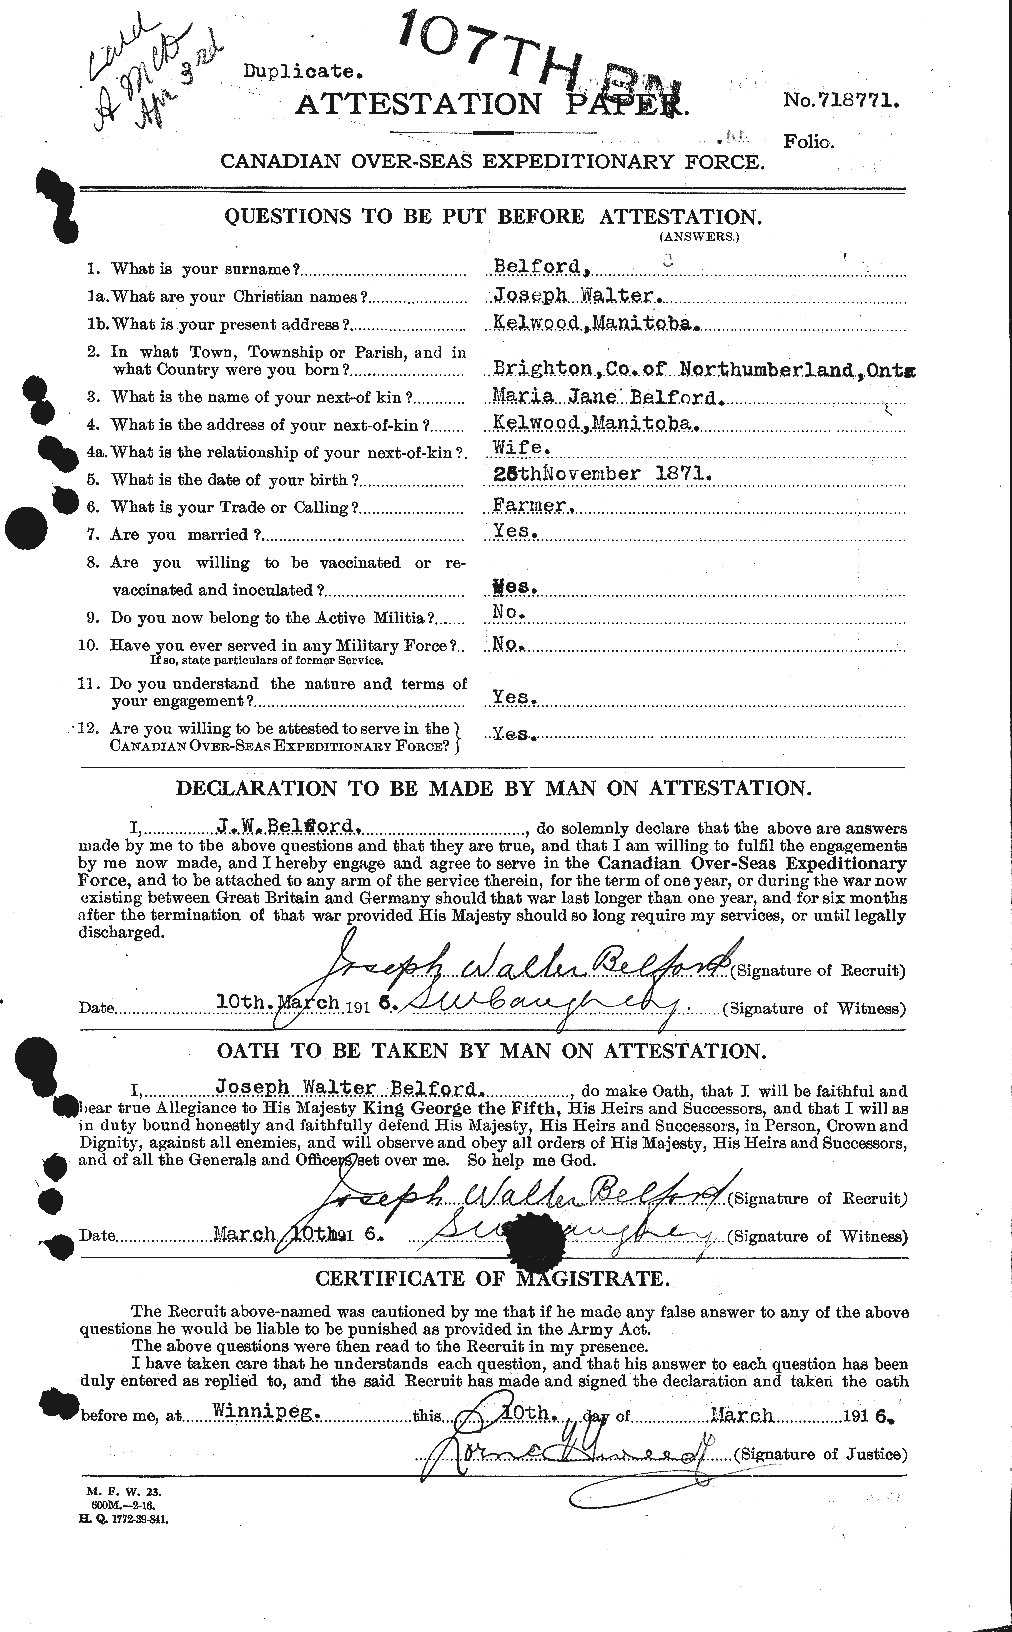 Dossiers du Personnel de la Première Guerre mondiale - CEC 232463a